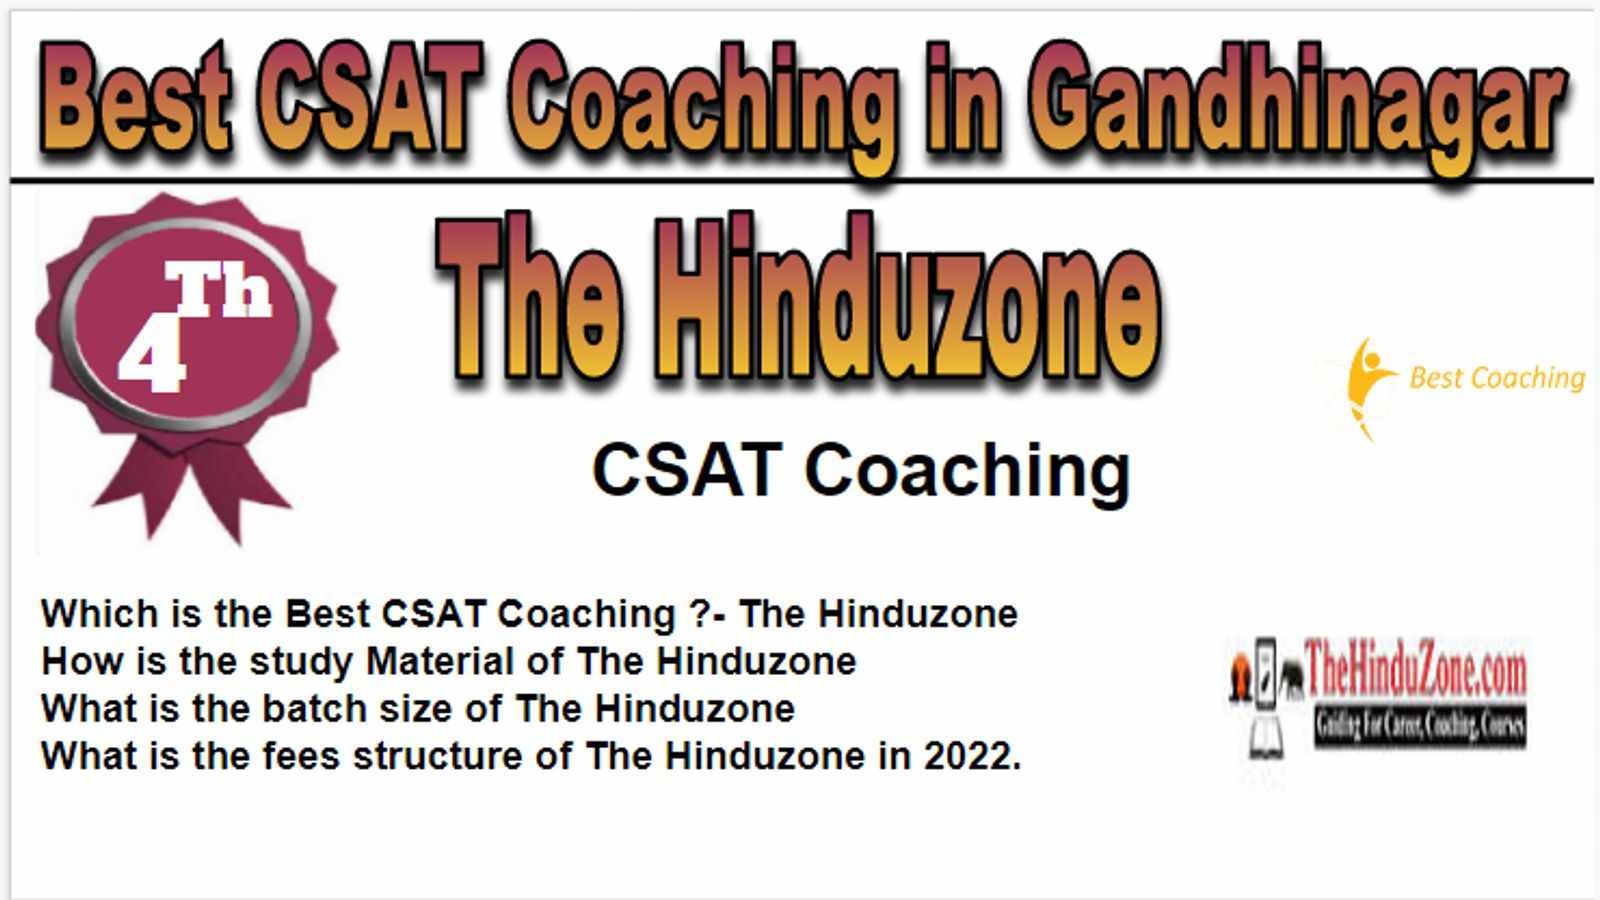 Rank 4 Best CSAT Coaching in Gandhinagar